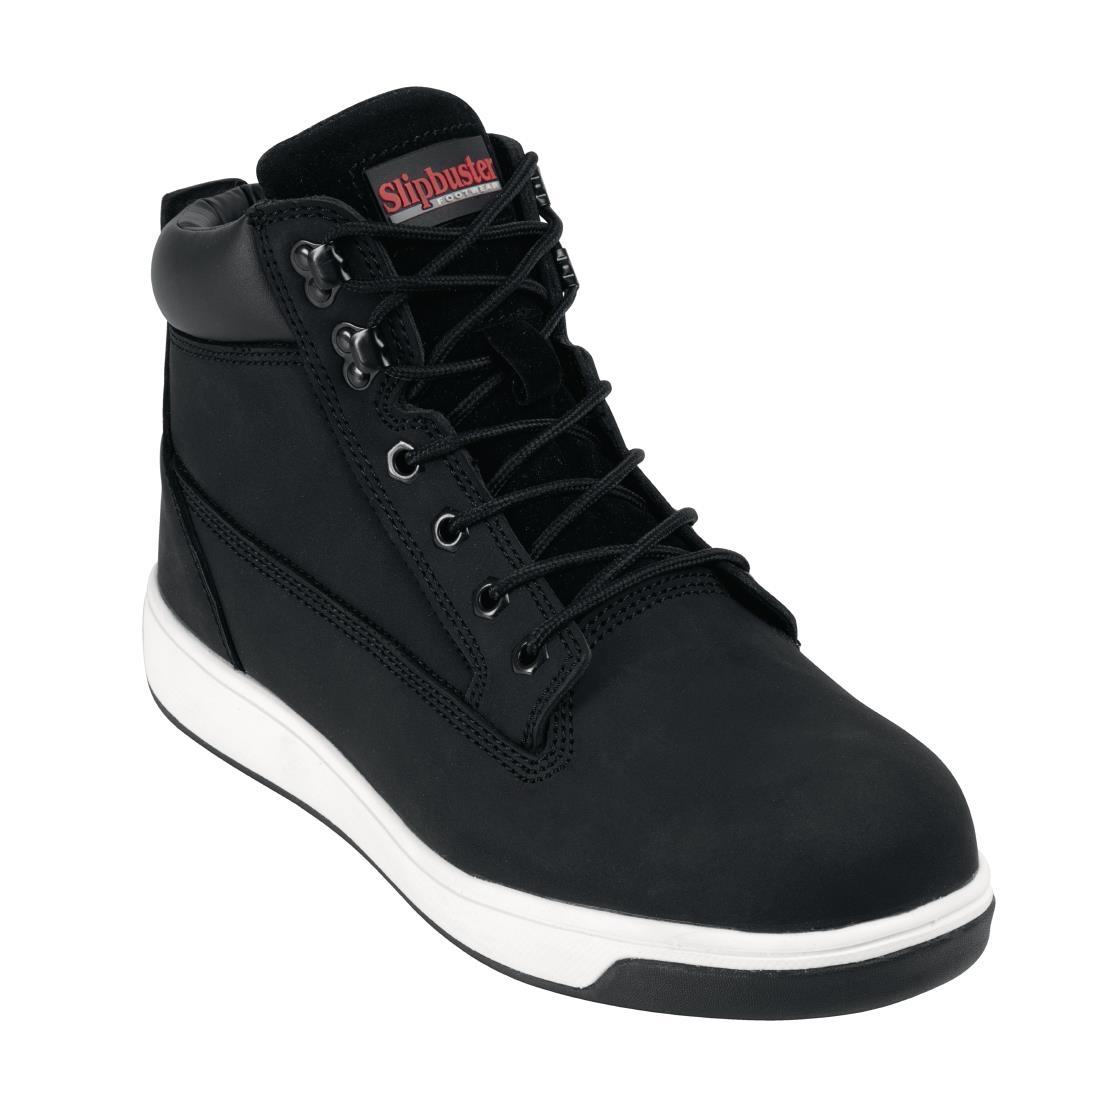 Slipbuster Sneaker Boots Black 45 - BB422-45  - 1